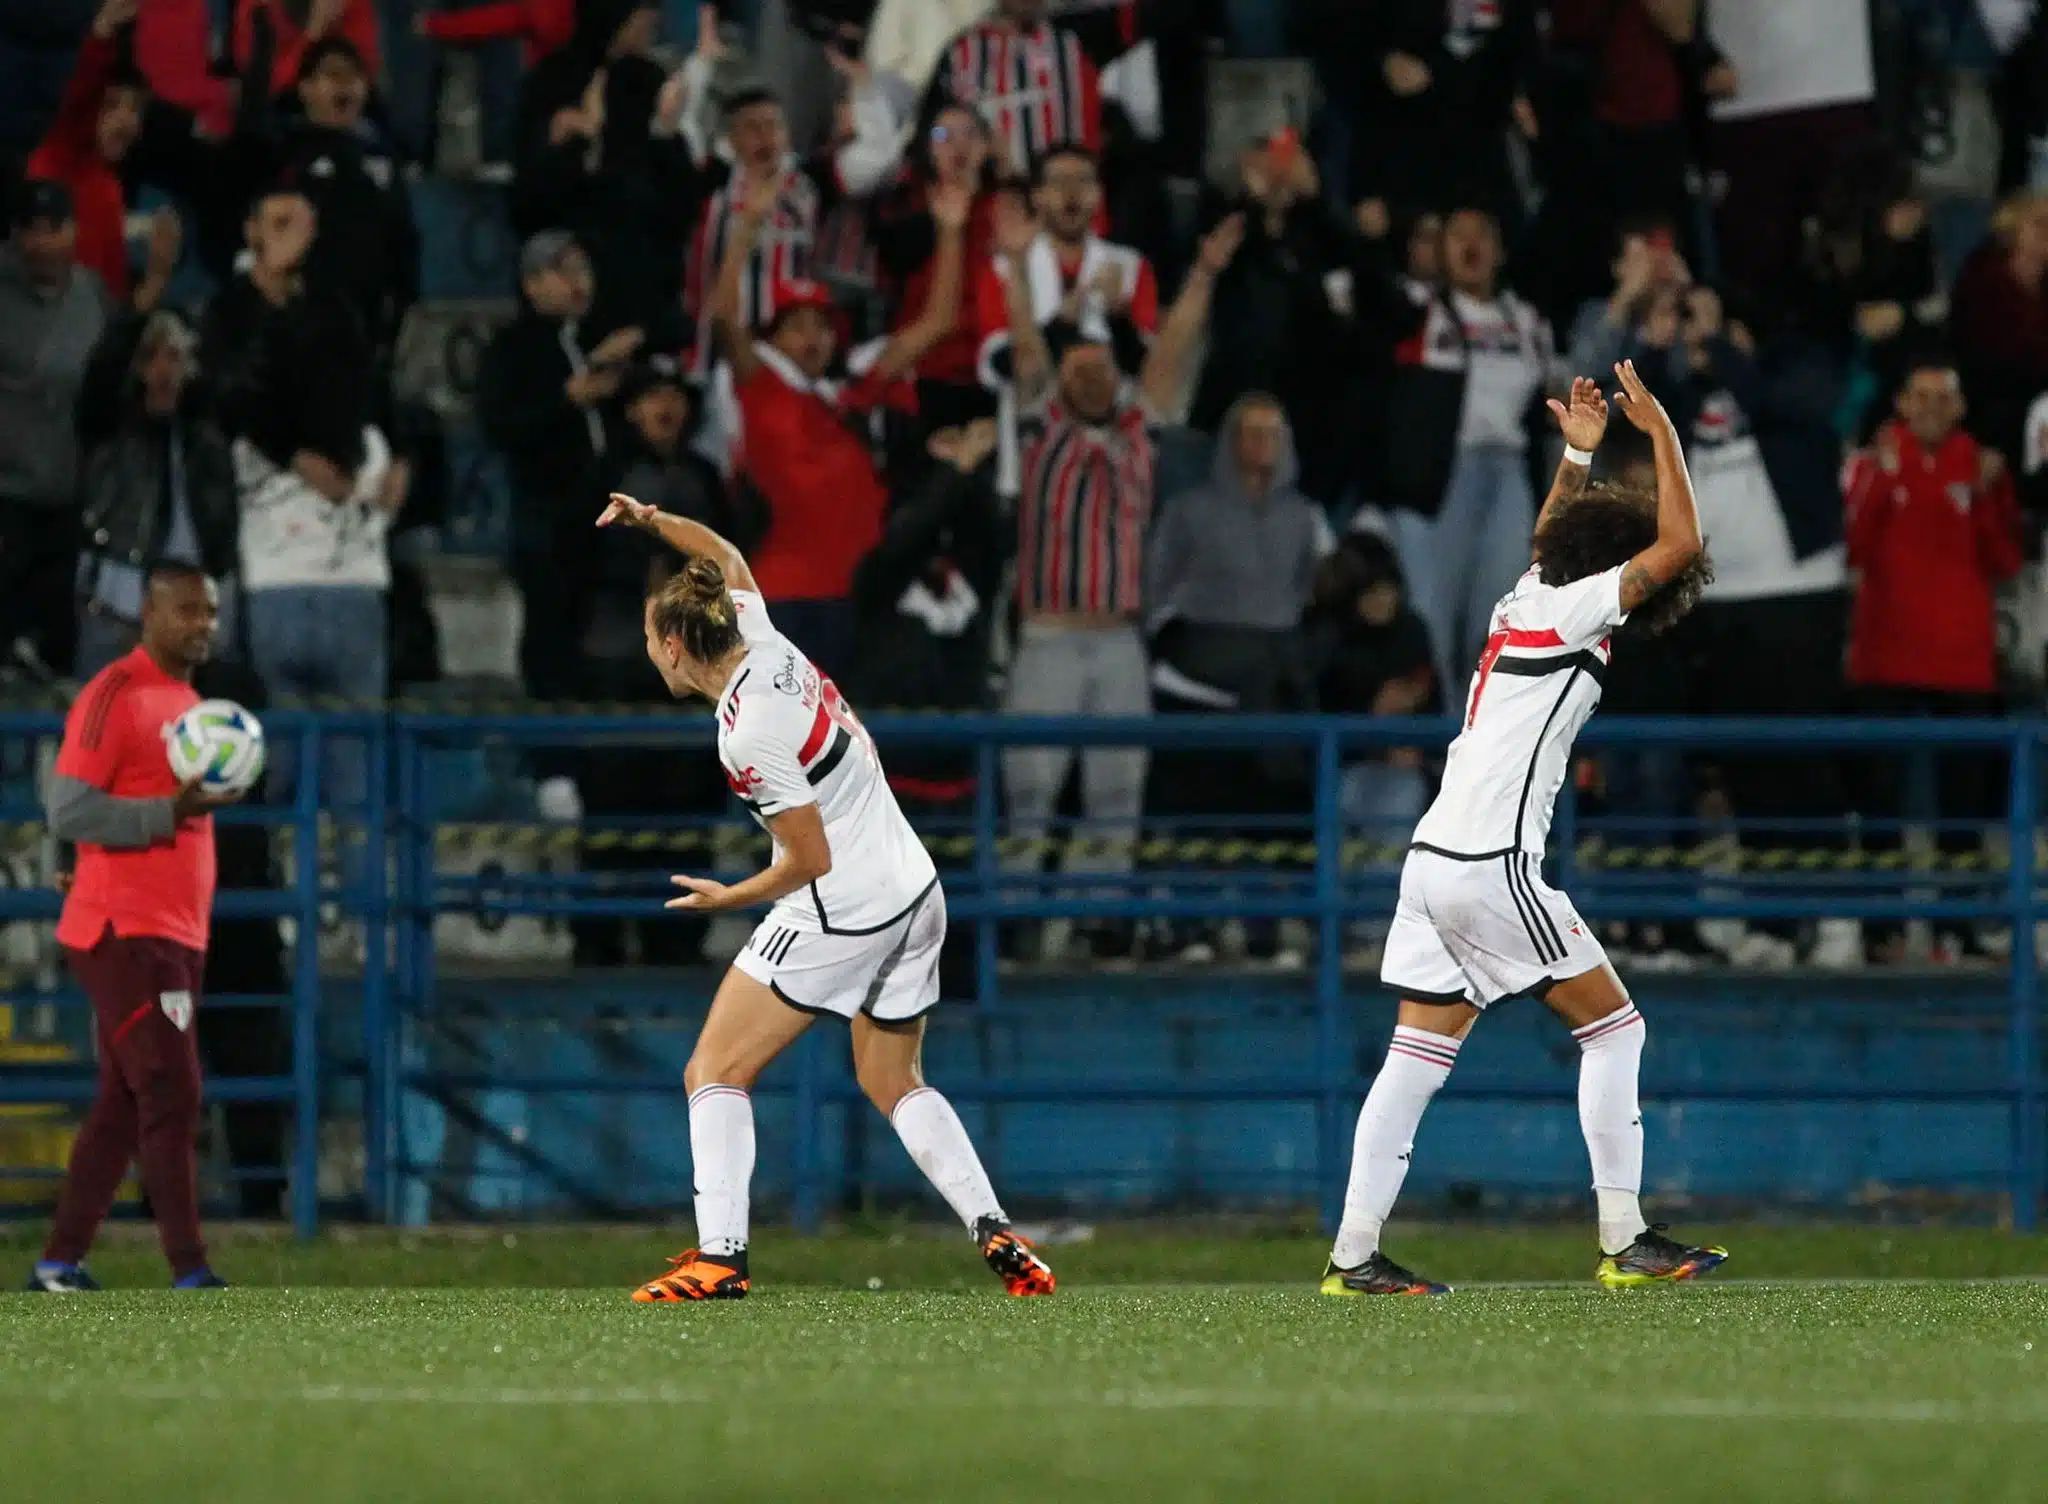 Futebol Feminino: São Paulo e Ferroviária fazem primeiro confronto em sequência de três jogos